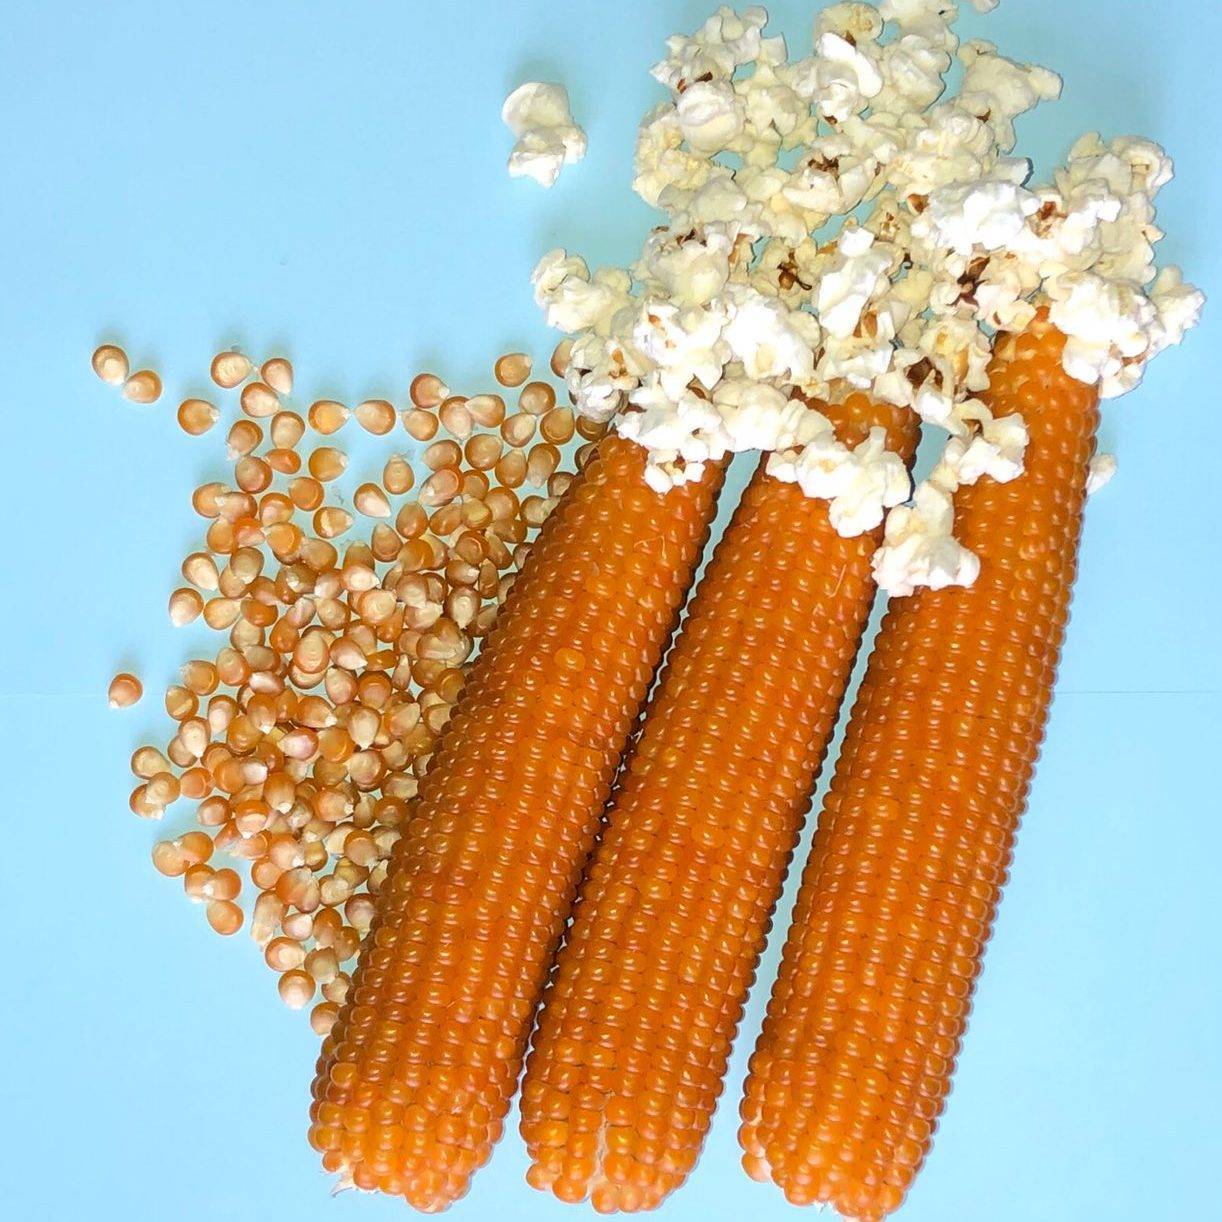 Кукуруза для попкорна: какая нужна, какие кукурузные зерна подходят для этой цели и как получить из них готовый попкорн разными способами